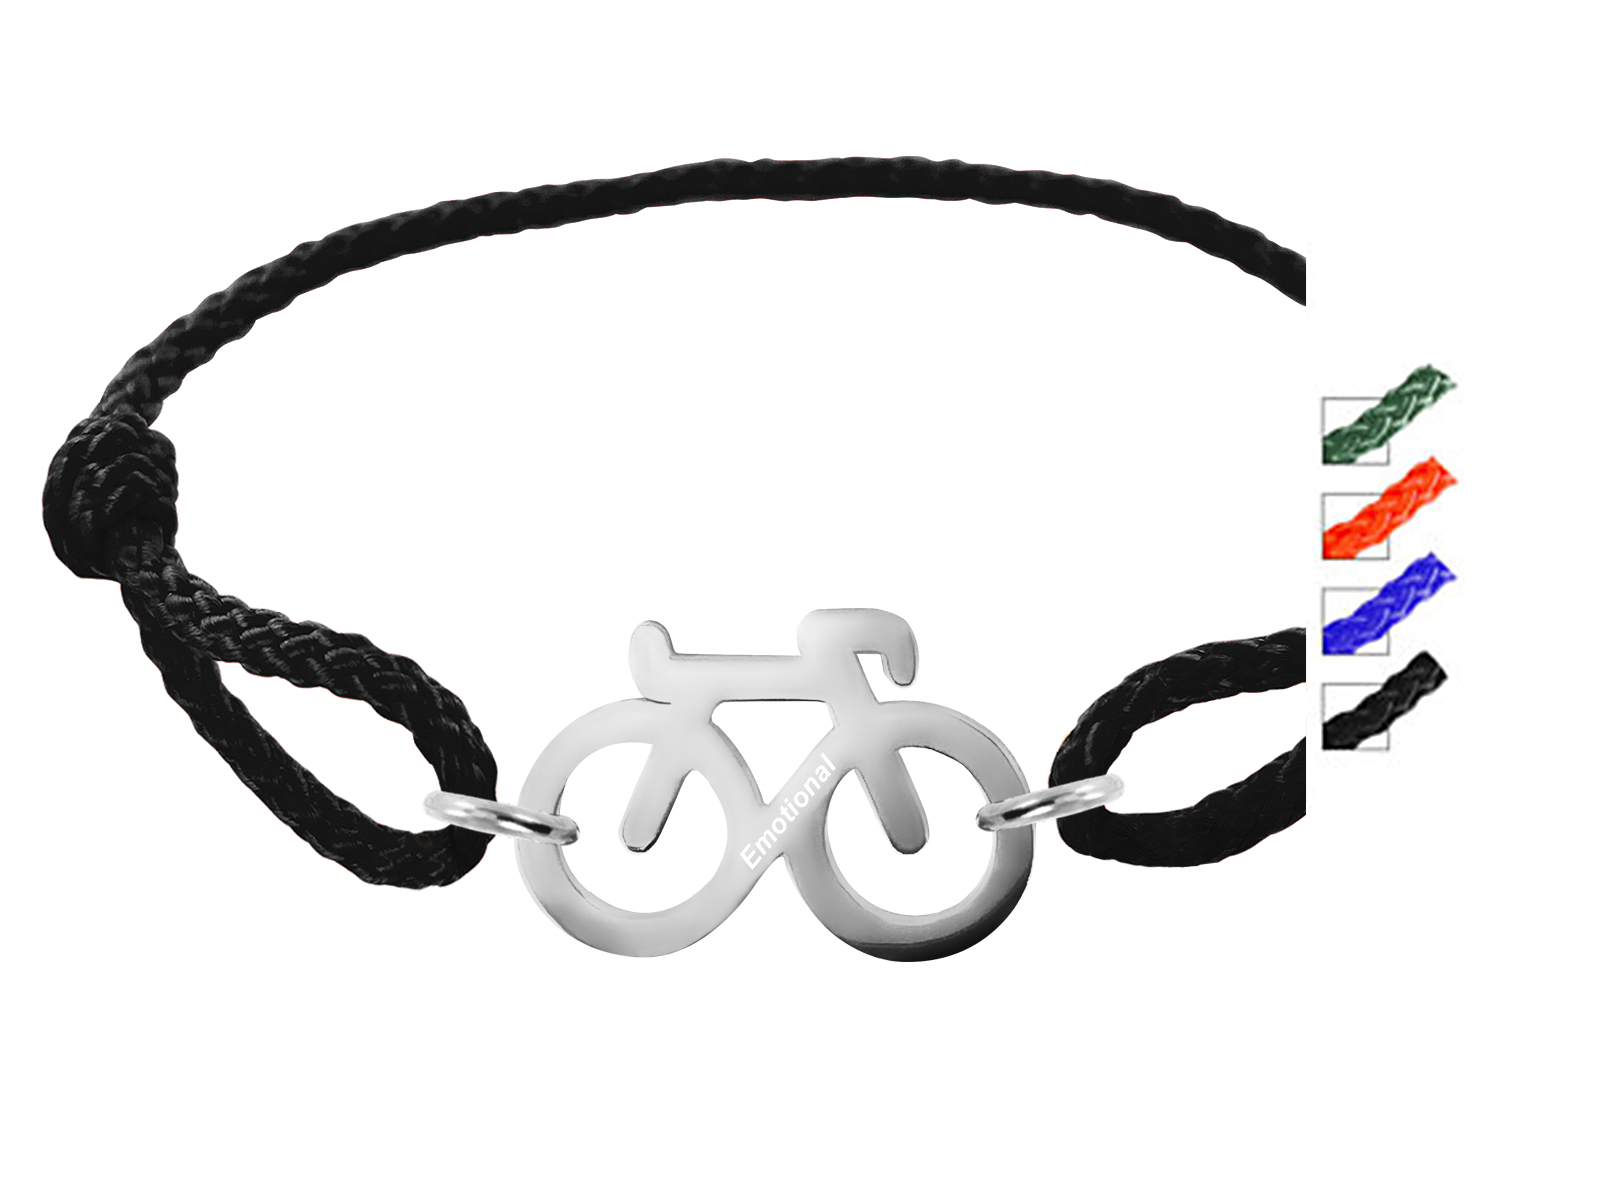 Bracelet ajustable en paracorde décoré d'un "vélo" en acier inoxydable argenté